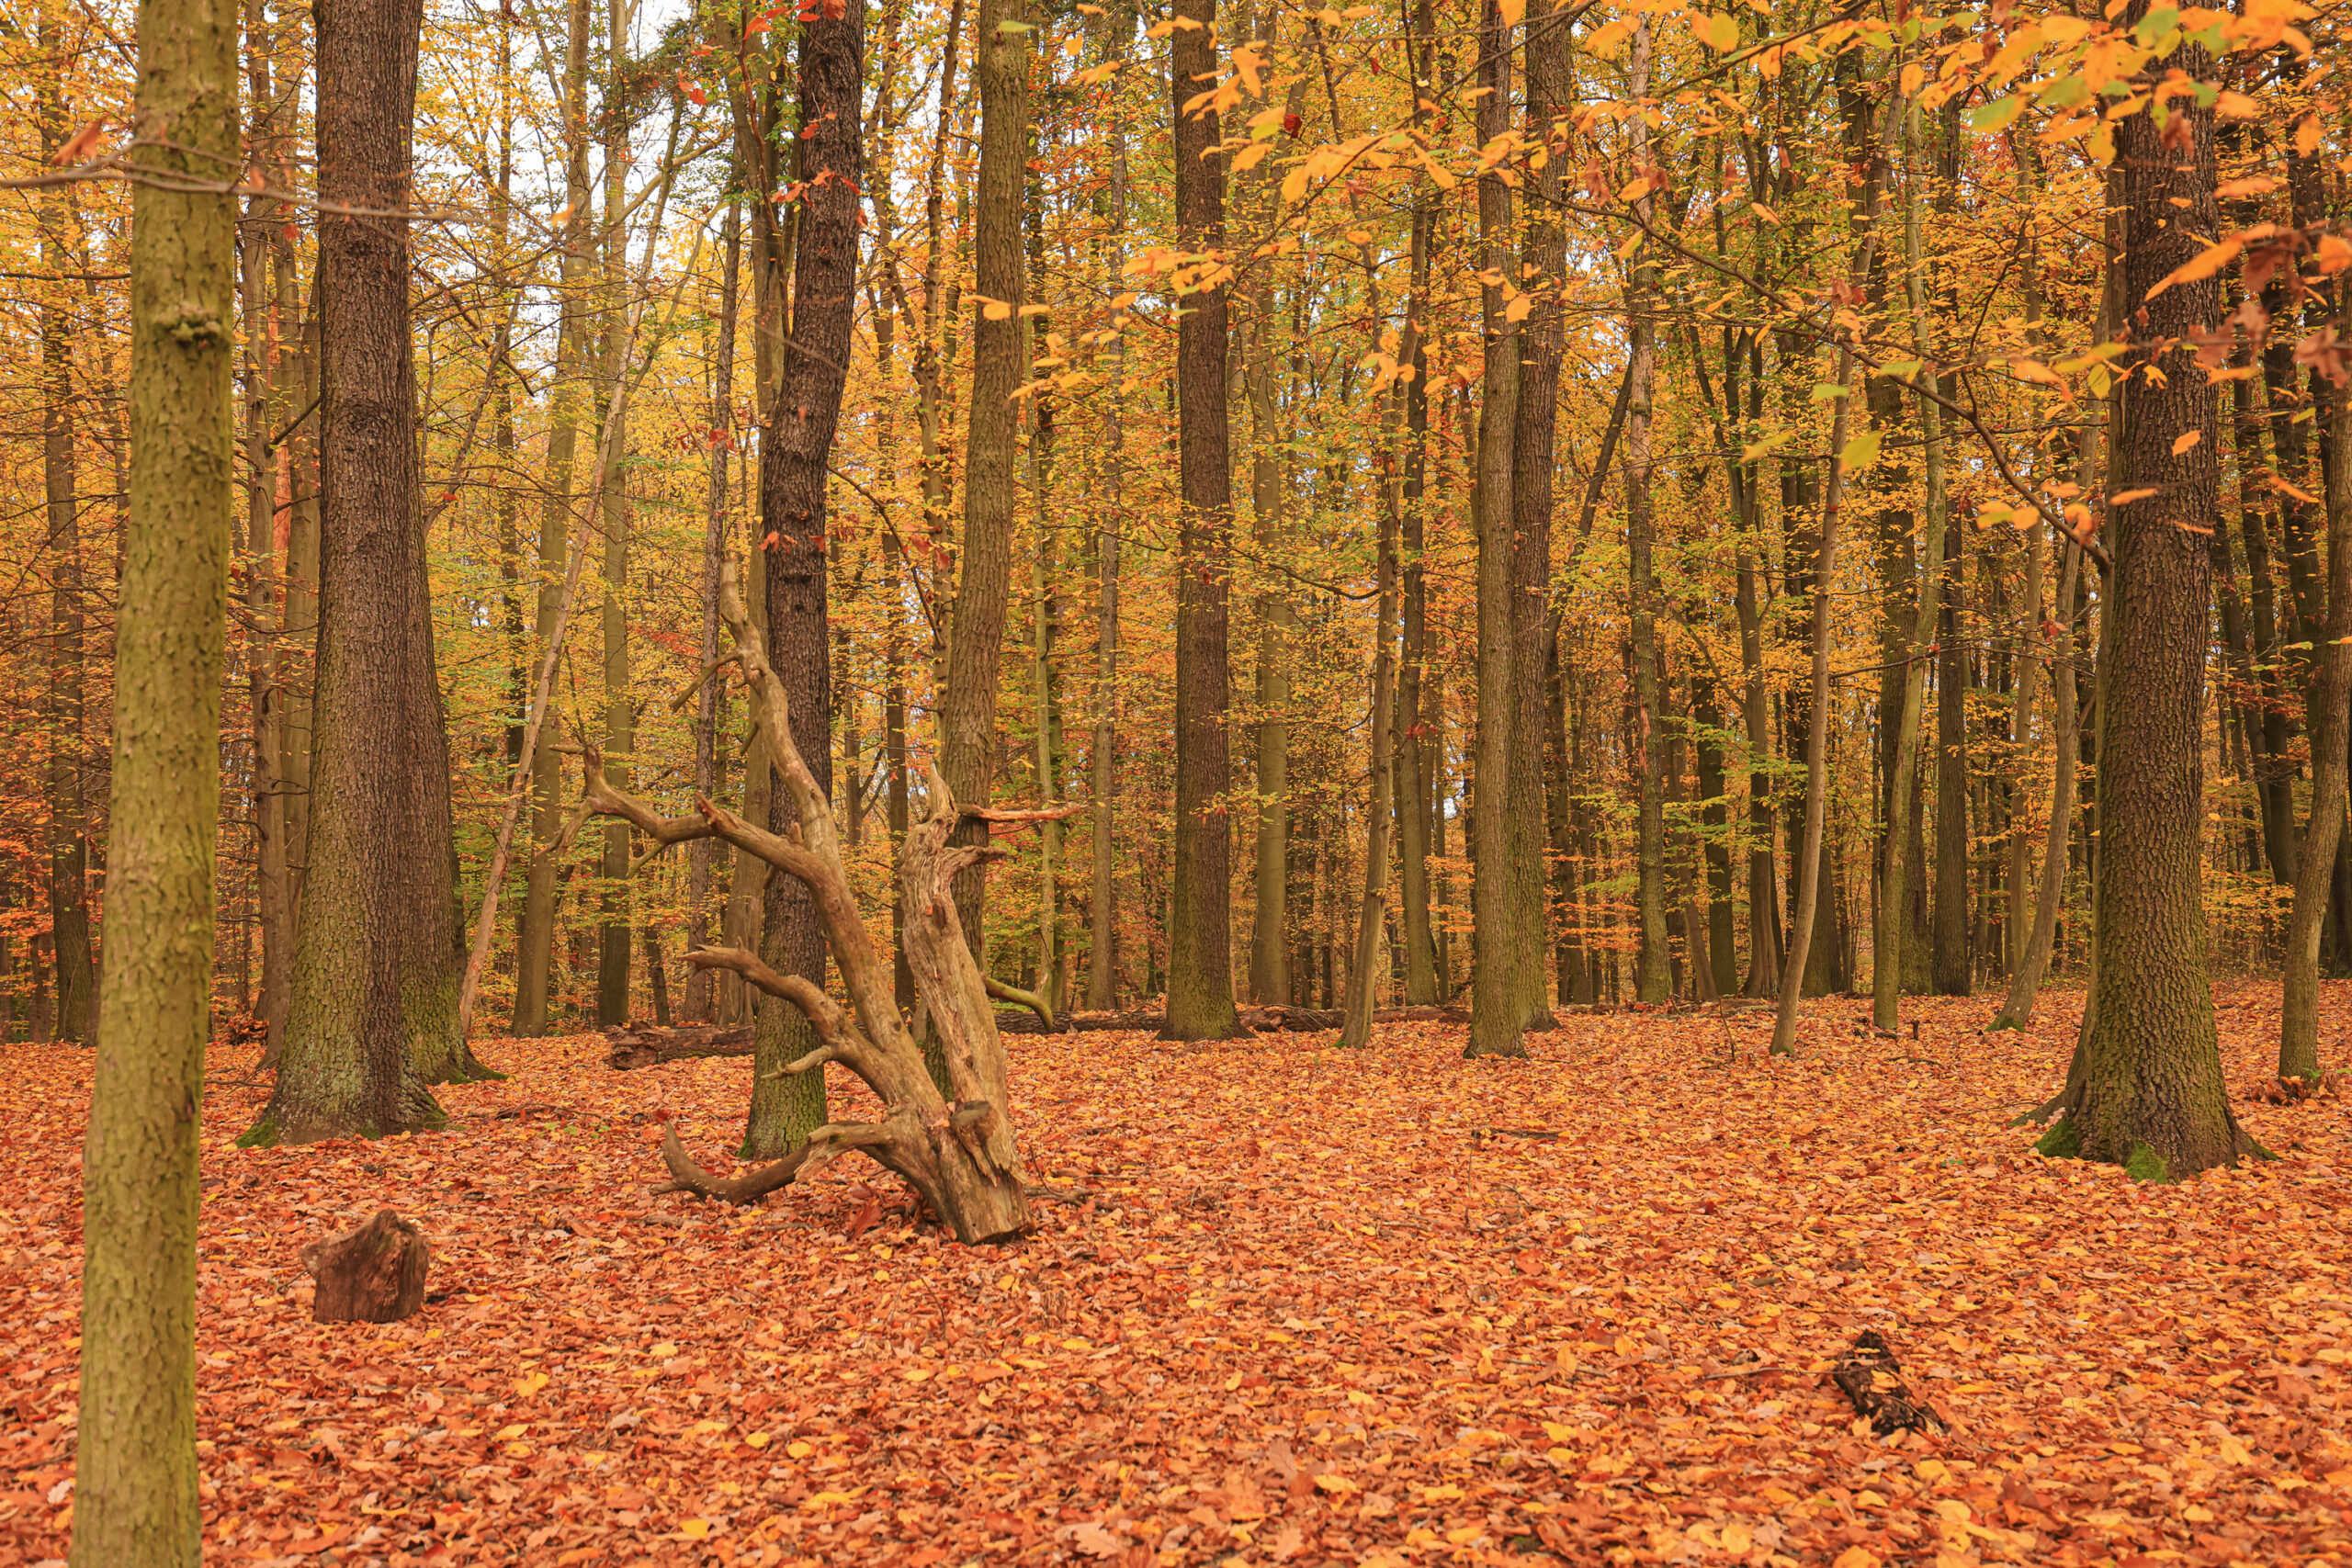 <h1>Zábělá – porost dubu</h1><br />
Podzimní pohled do interiéru vzrostlého dubového lesa na rovinatém terénu. Povrch půdy pokrývá vrstva listí v odstínech od žluté přes rezavou až k hnědé.